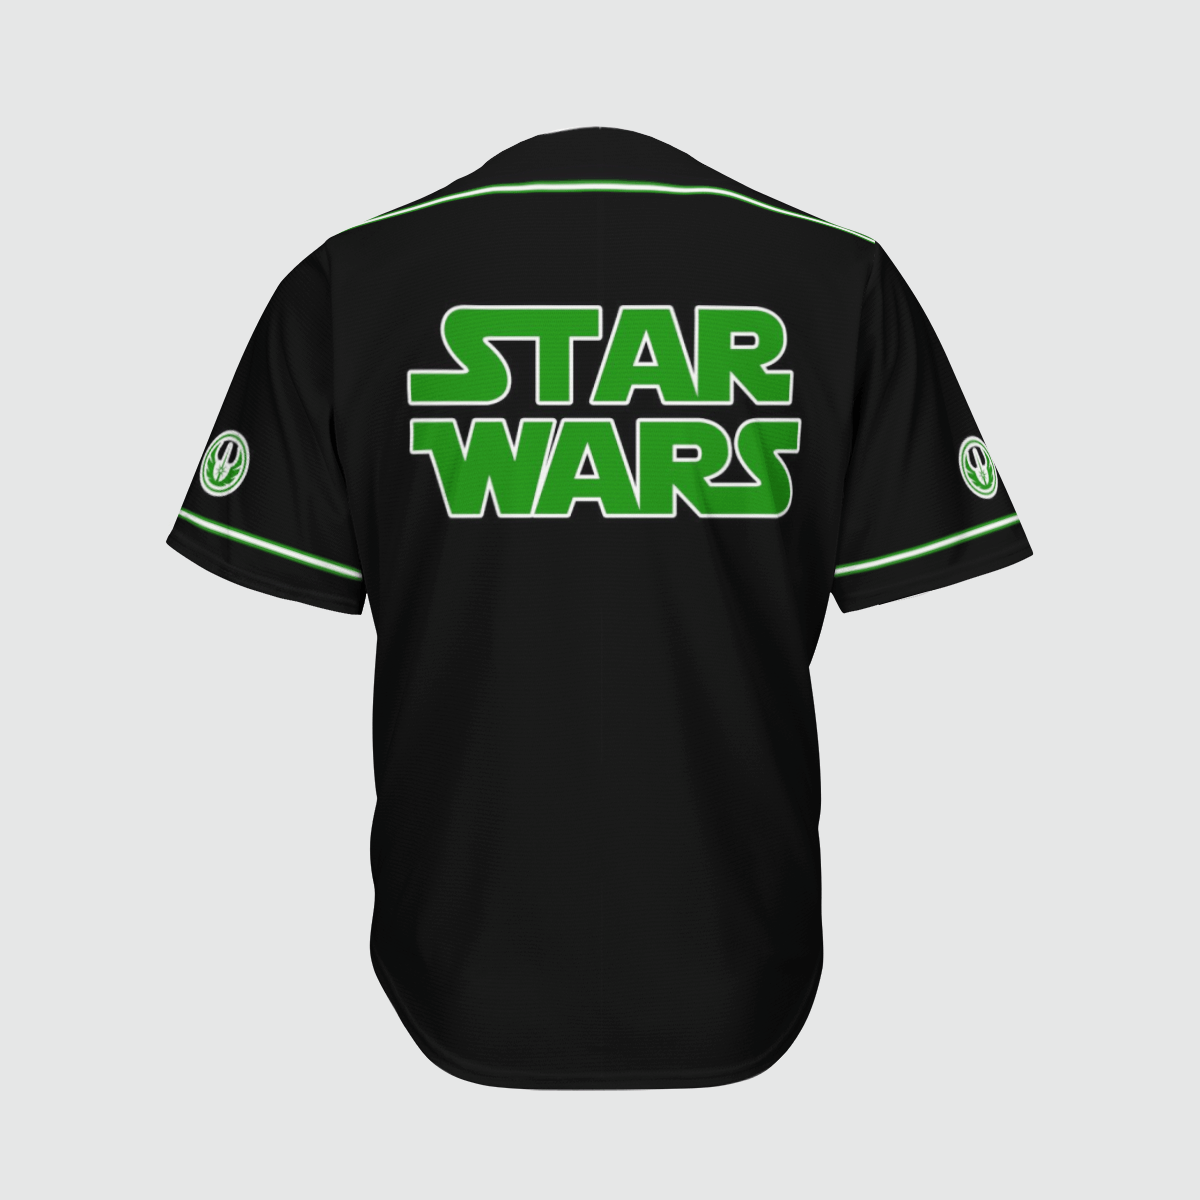 Grogu Star Wars baseball shirt 1